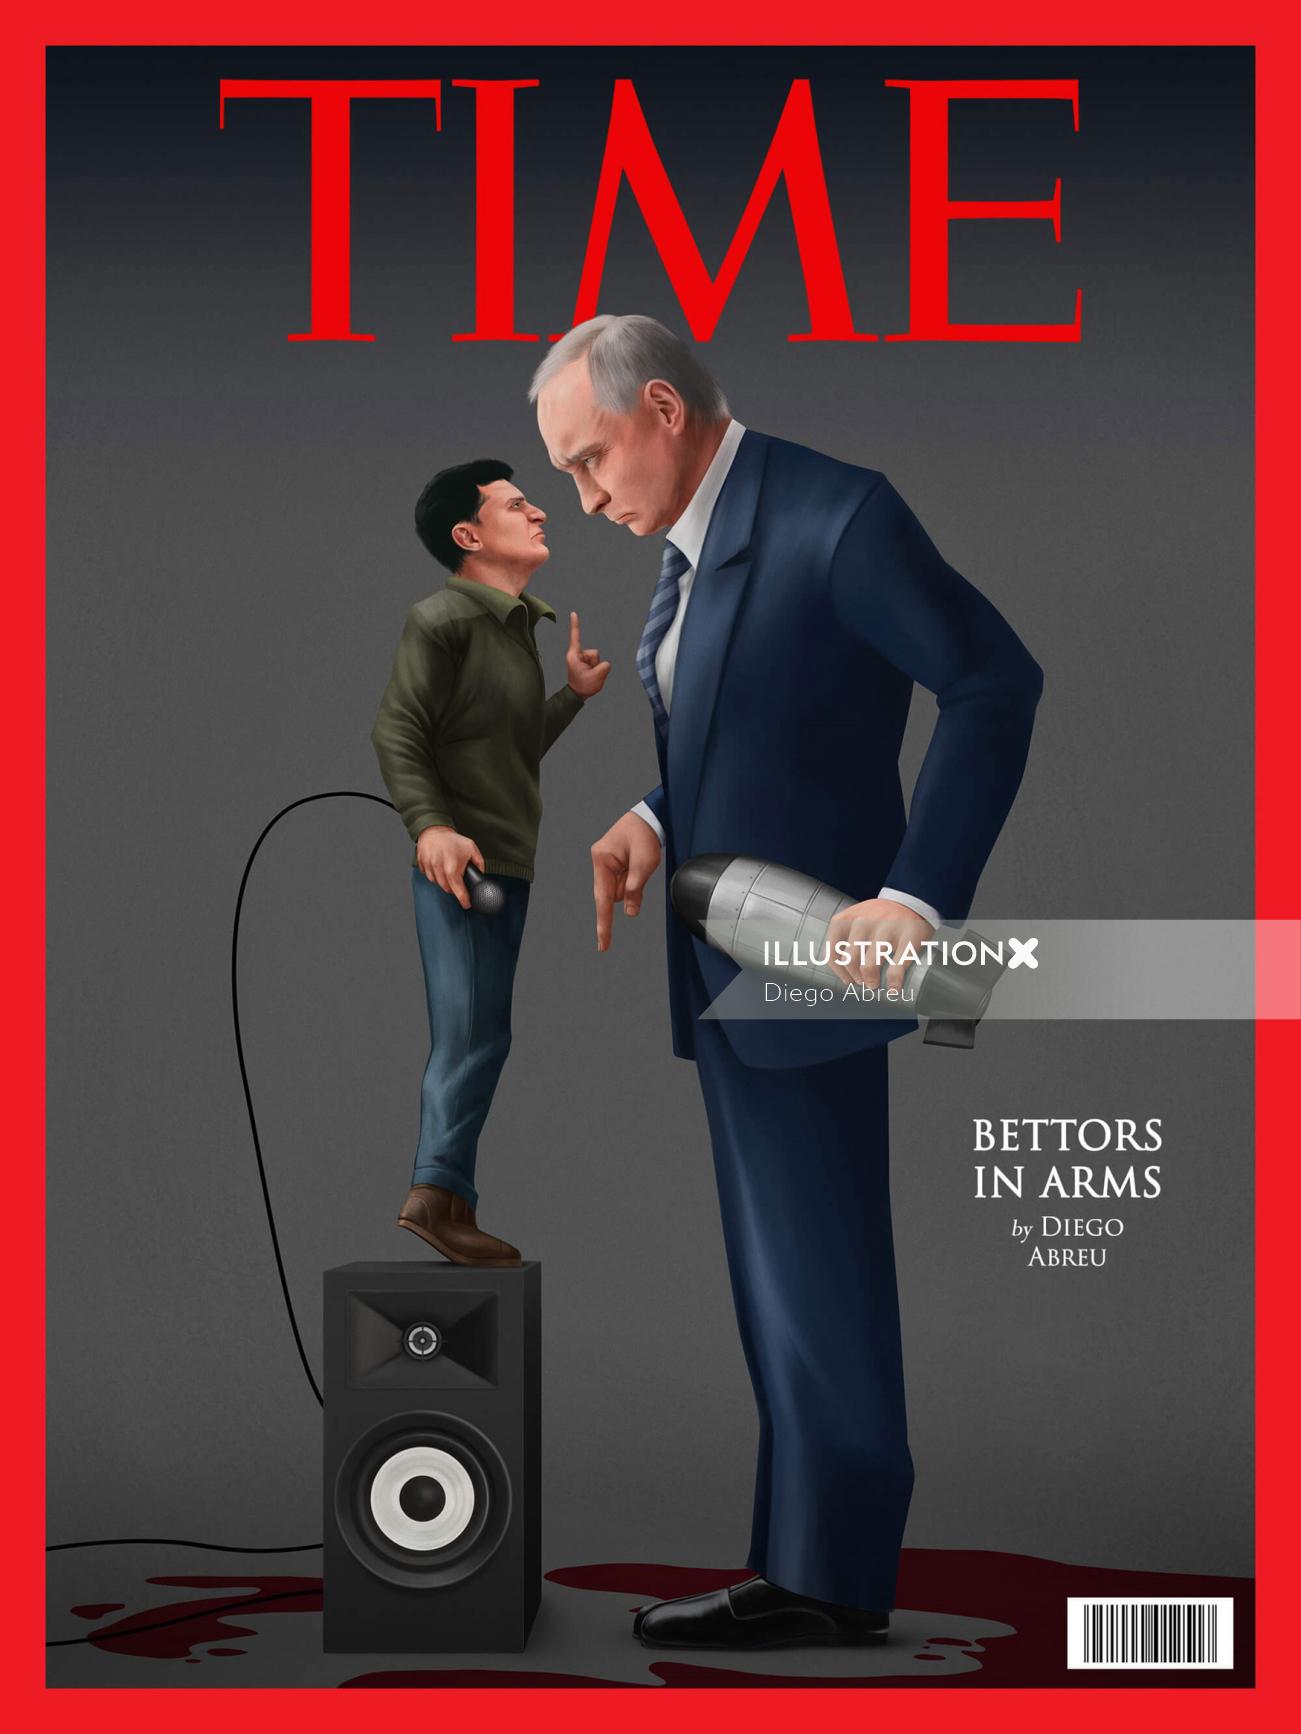 Couverture du magazine Time sur la guerre russo-ukrainienne